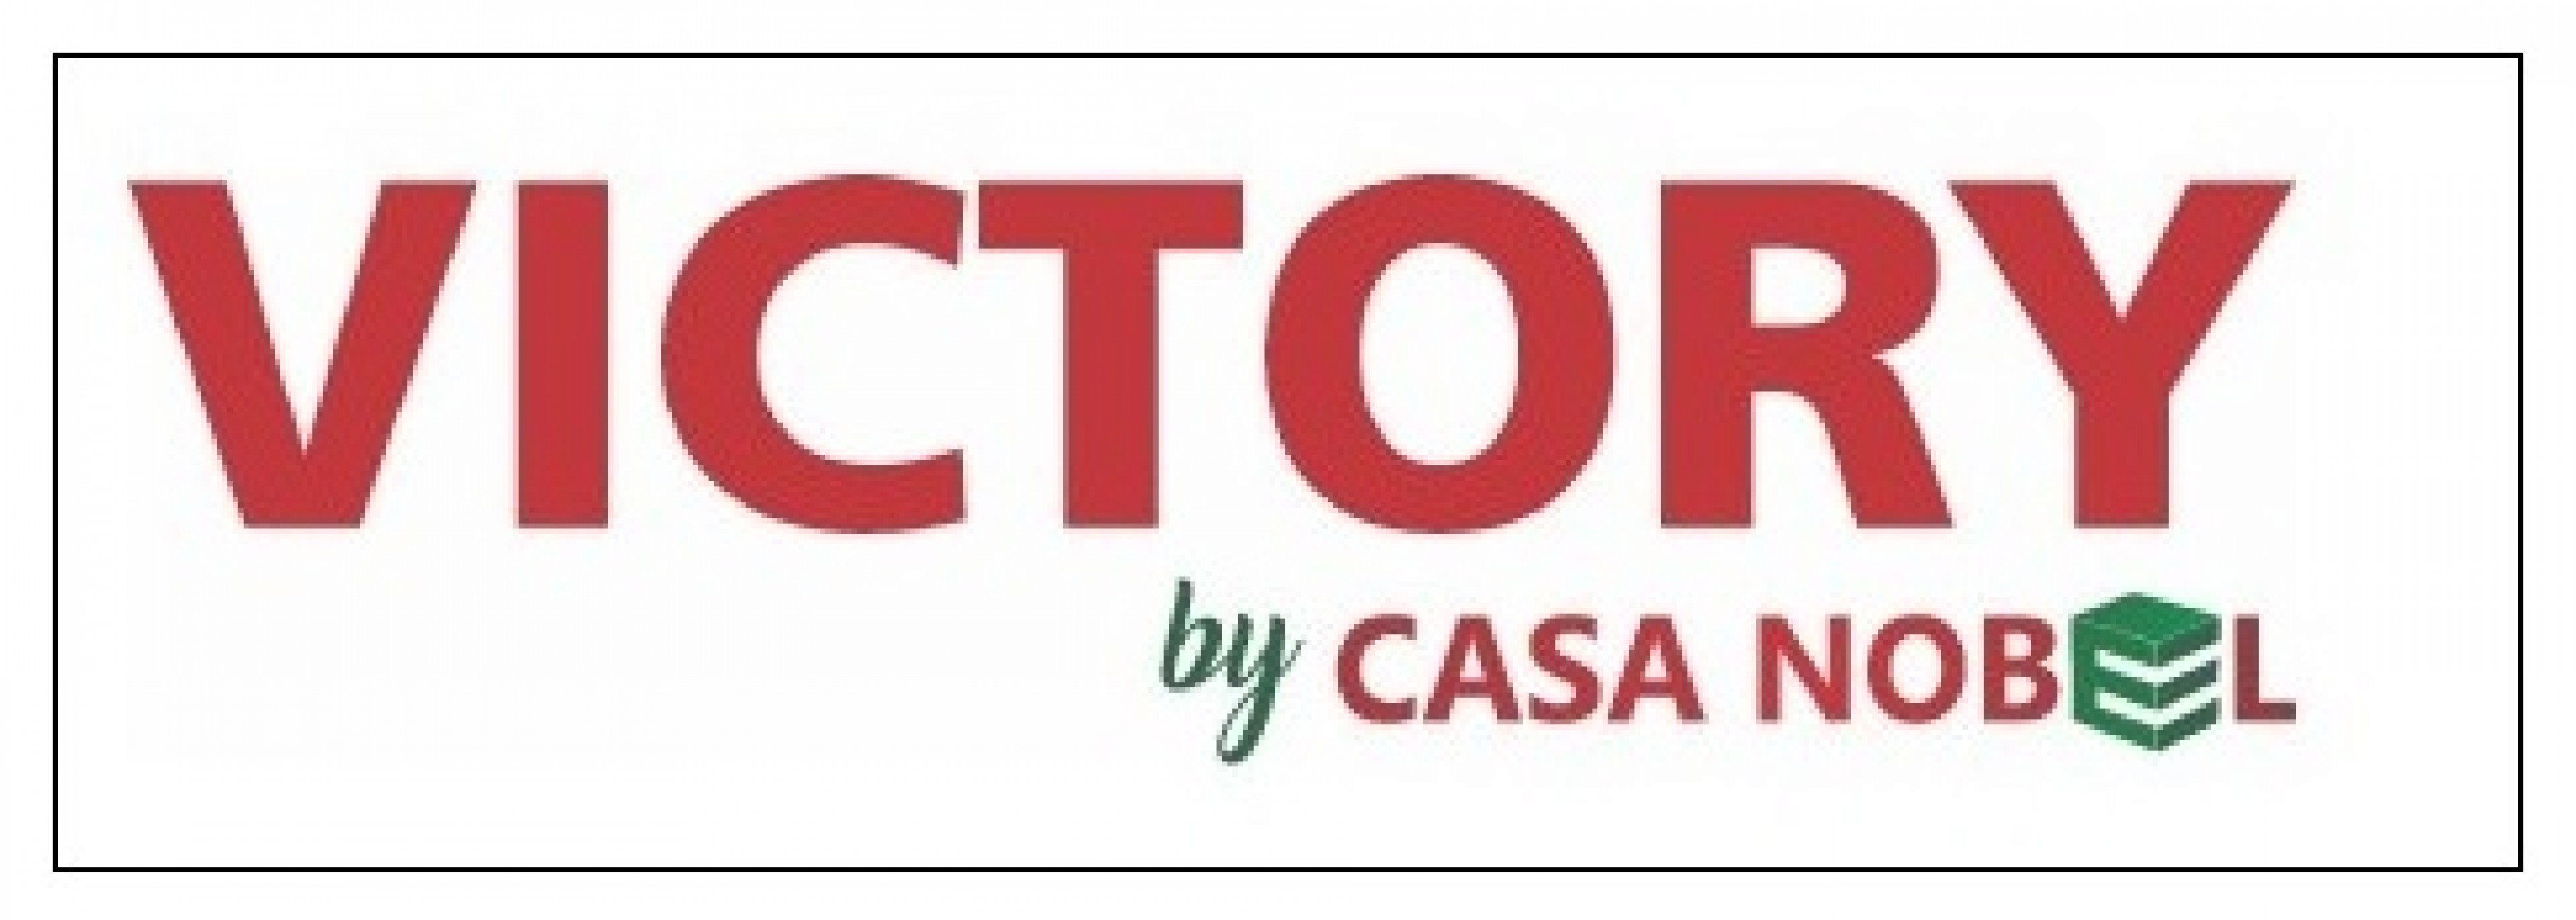 Logo Victory by Casa Nobel